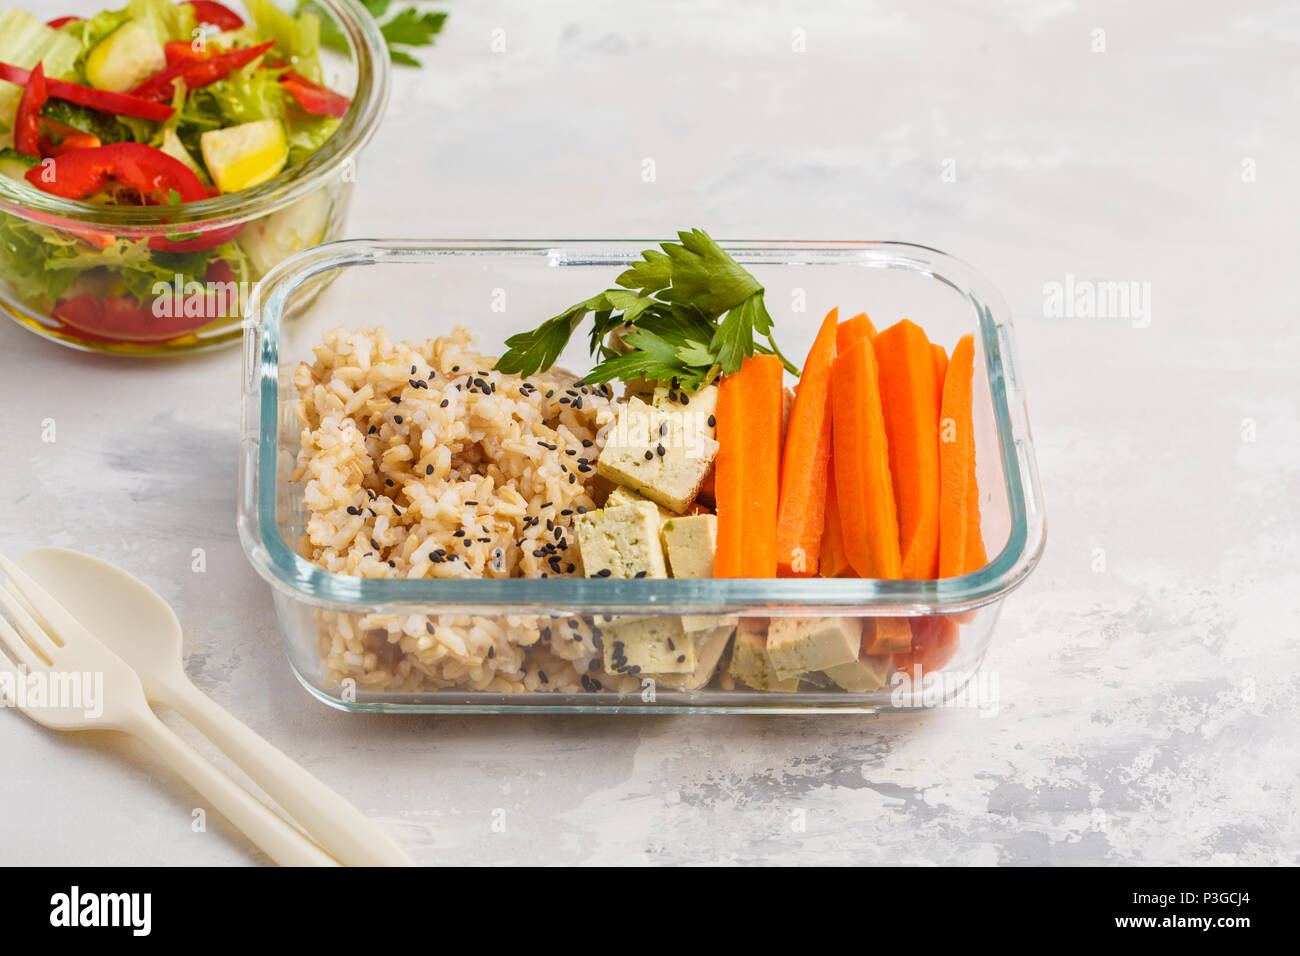 Préparation des repas sains avec des conteneurs de riz brun, tofu et légumes frais Salades tourné avec copie espace. La nourriture végétalienne saine concept. Banque D'Images